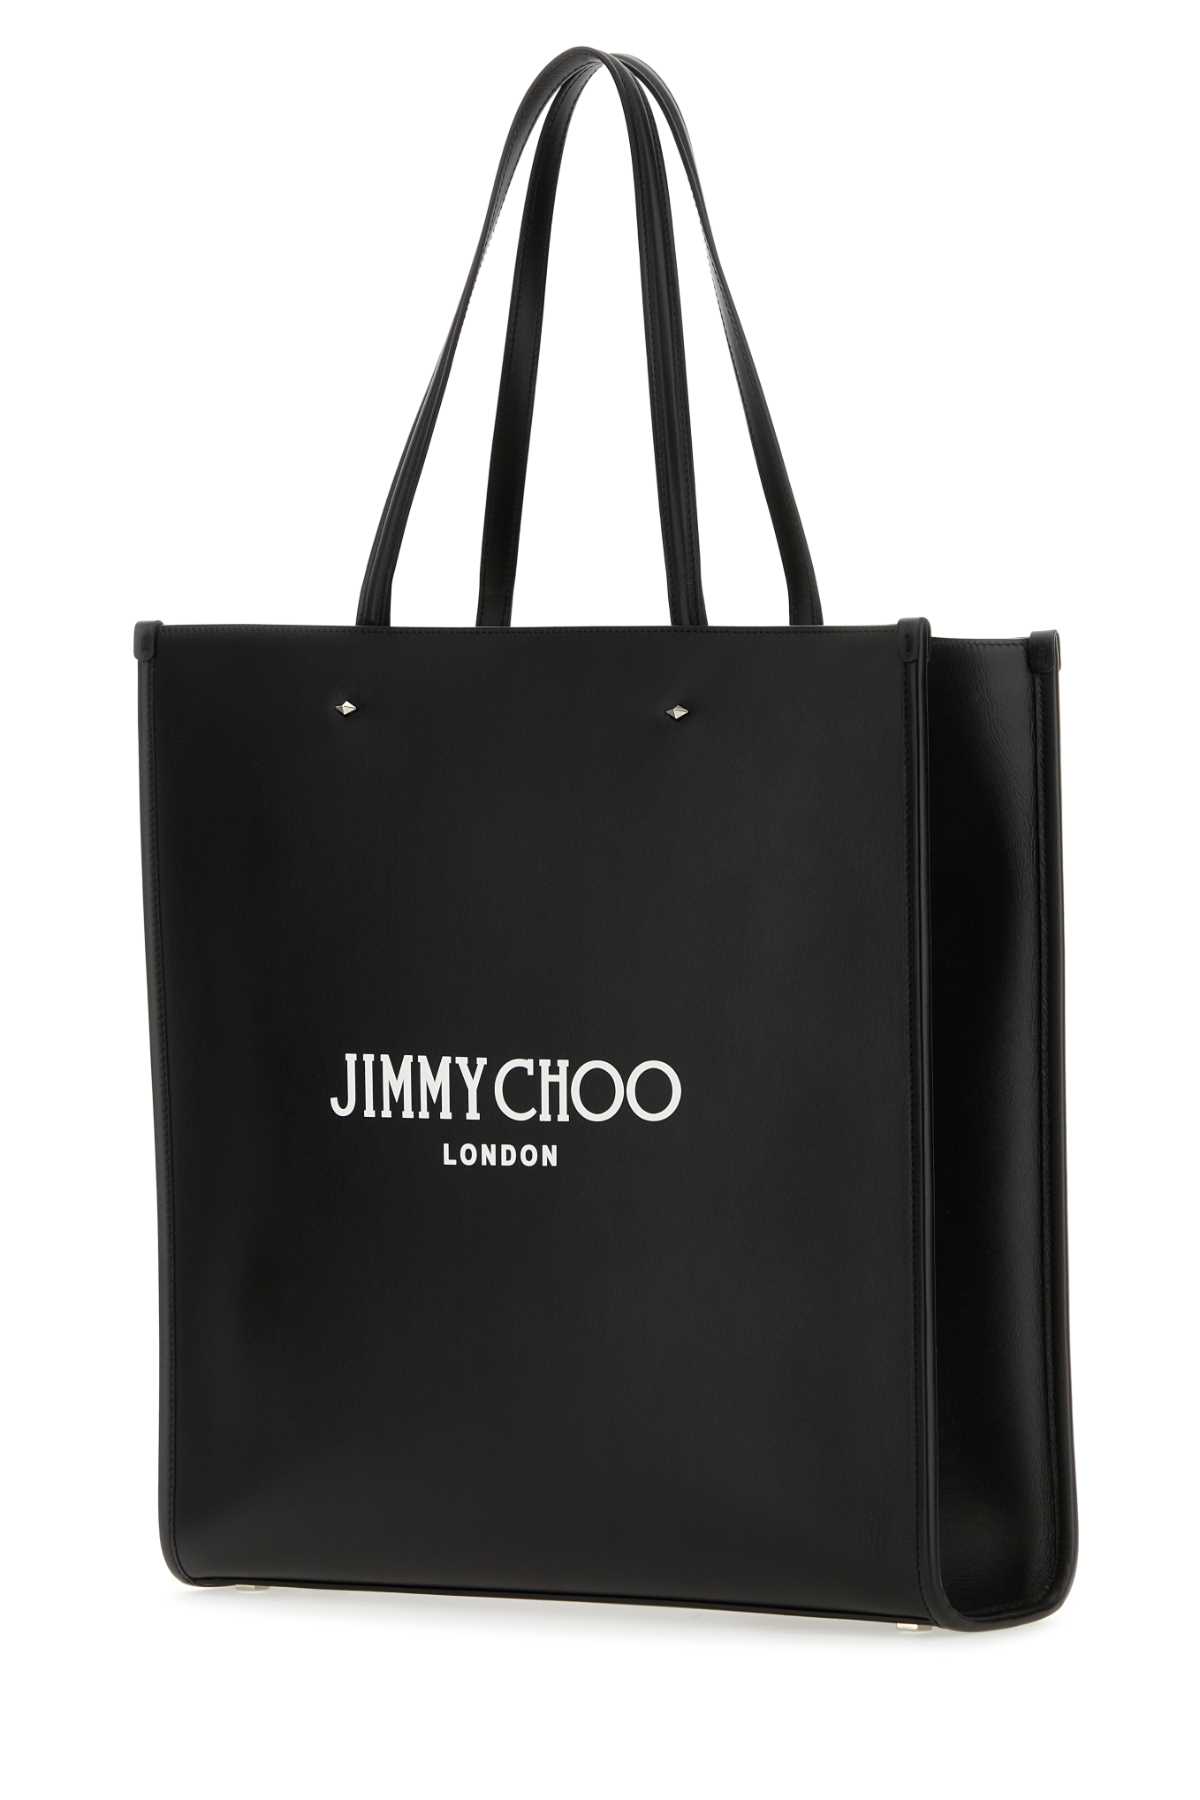 JIMMY CHOO BLACK LEATHER N/S TOTE M SHOPPING BAG